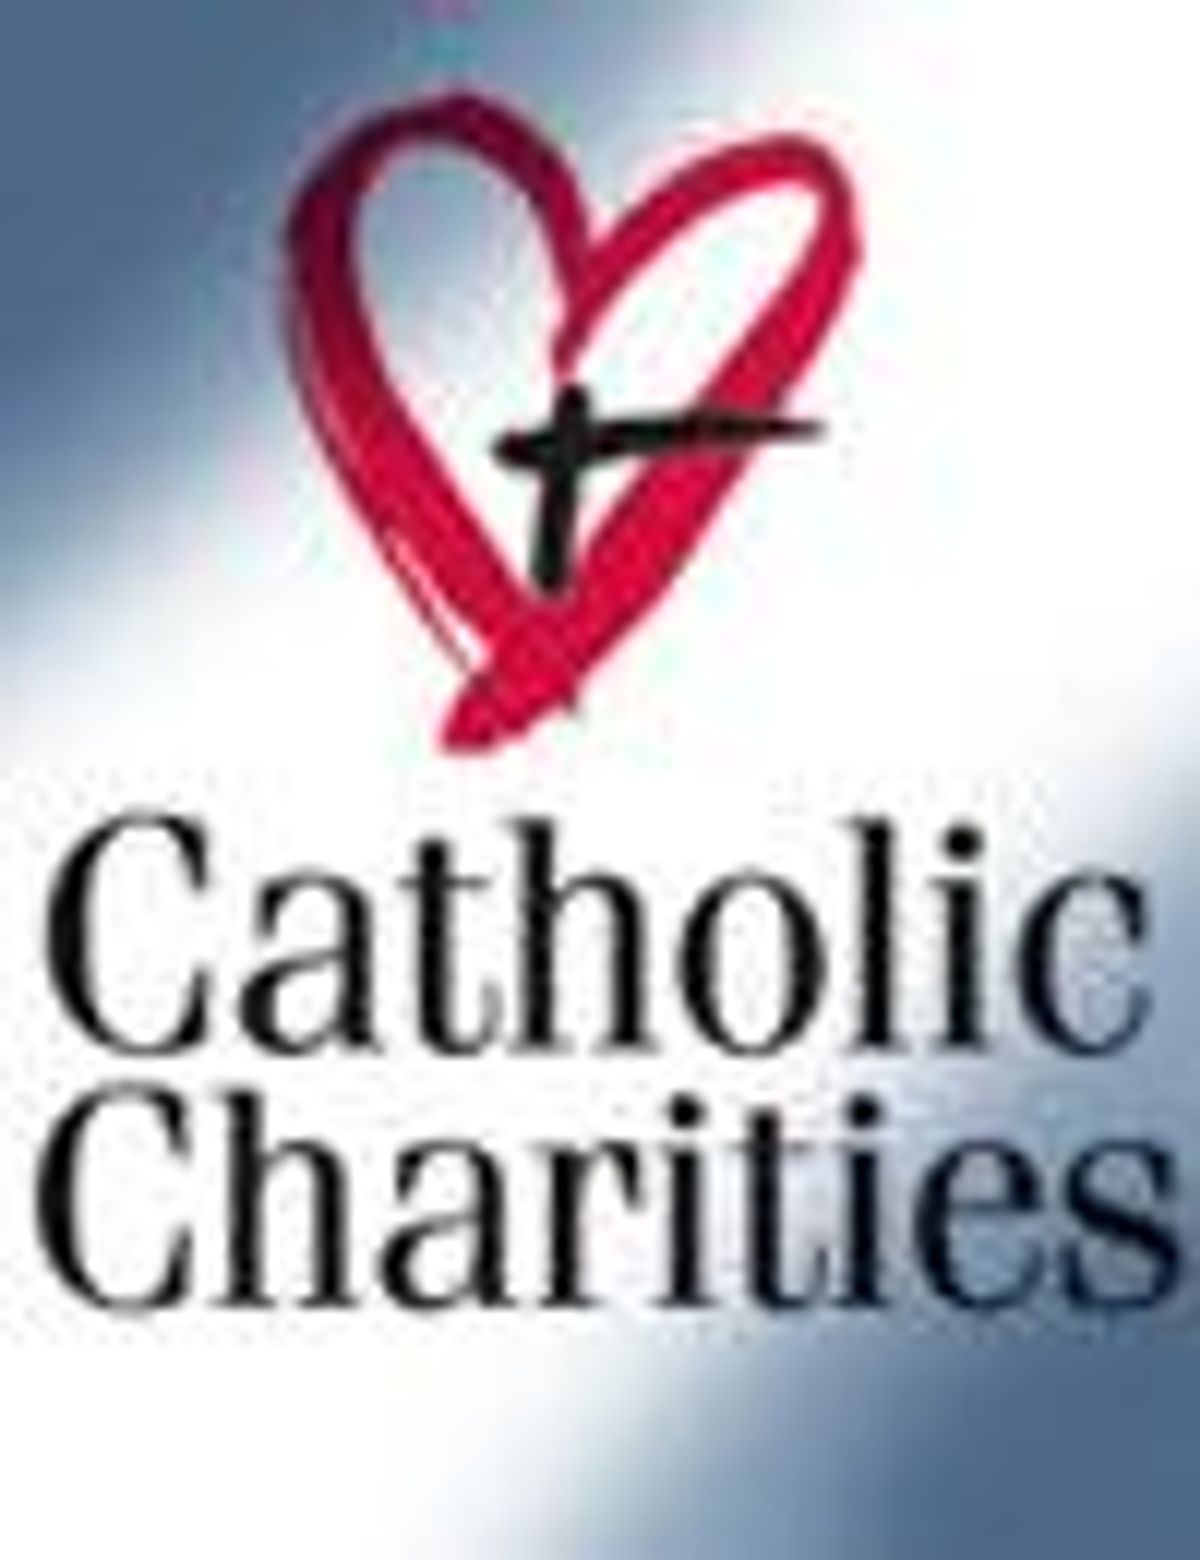 Catholic_charitites